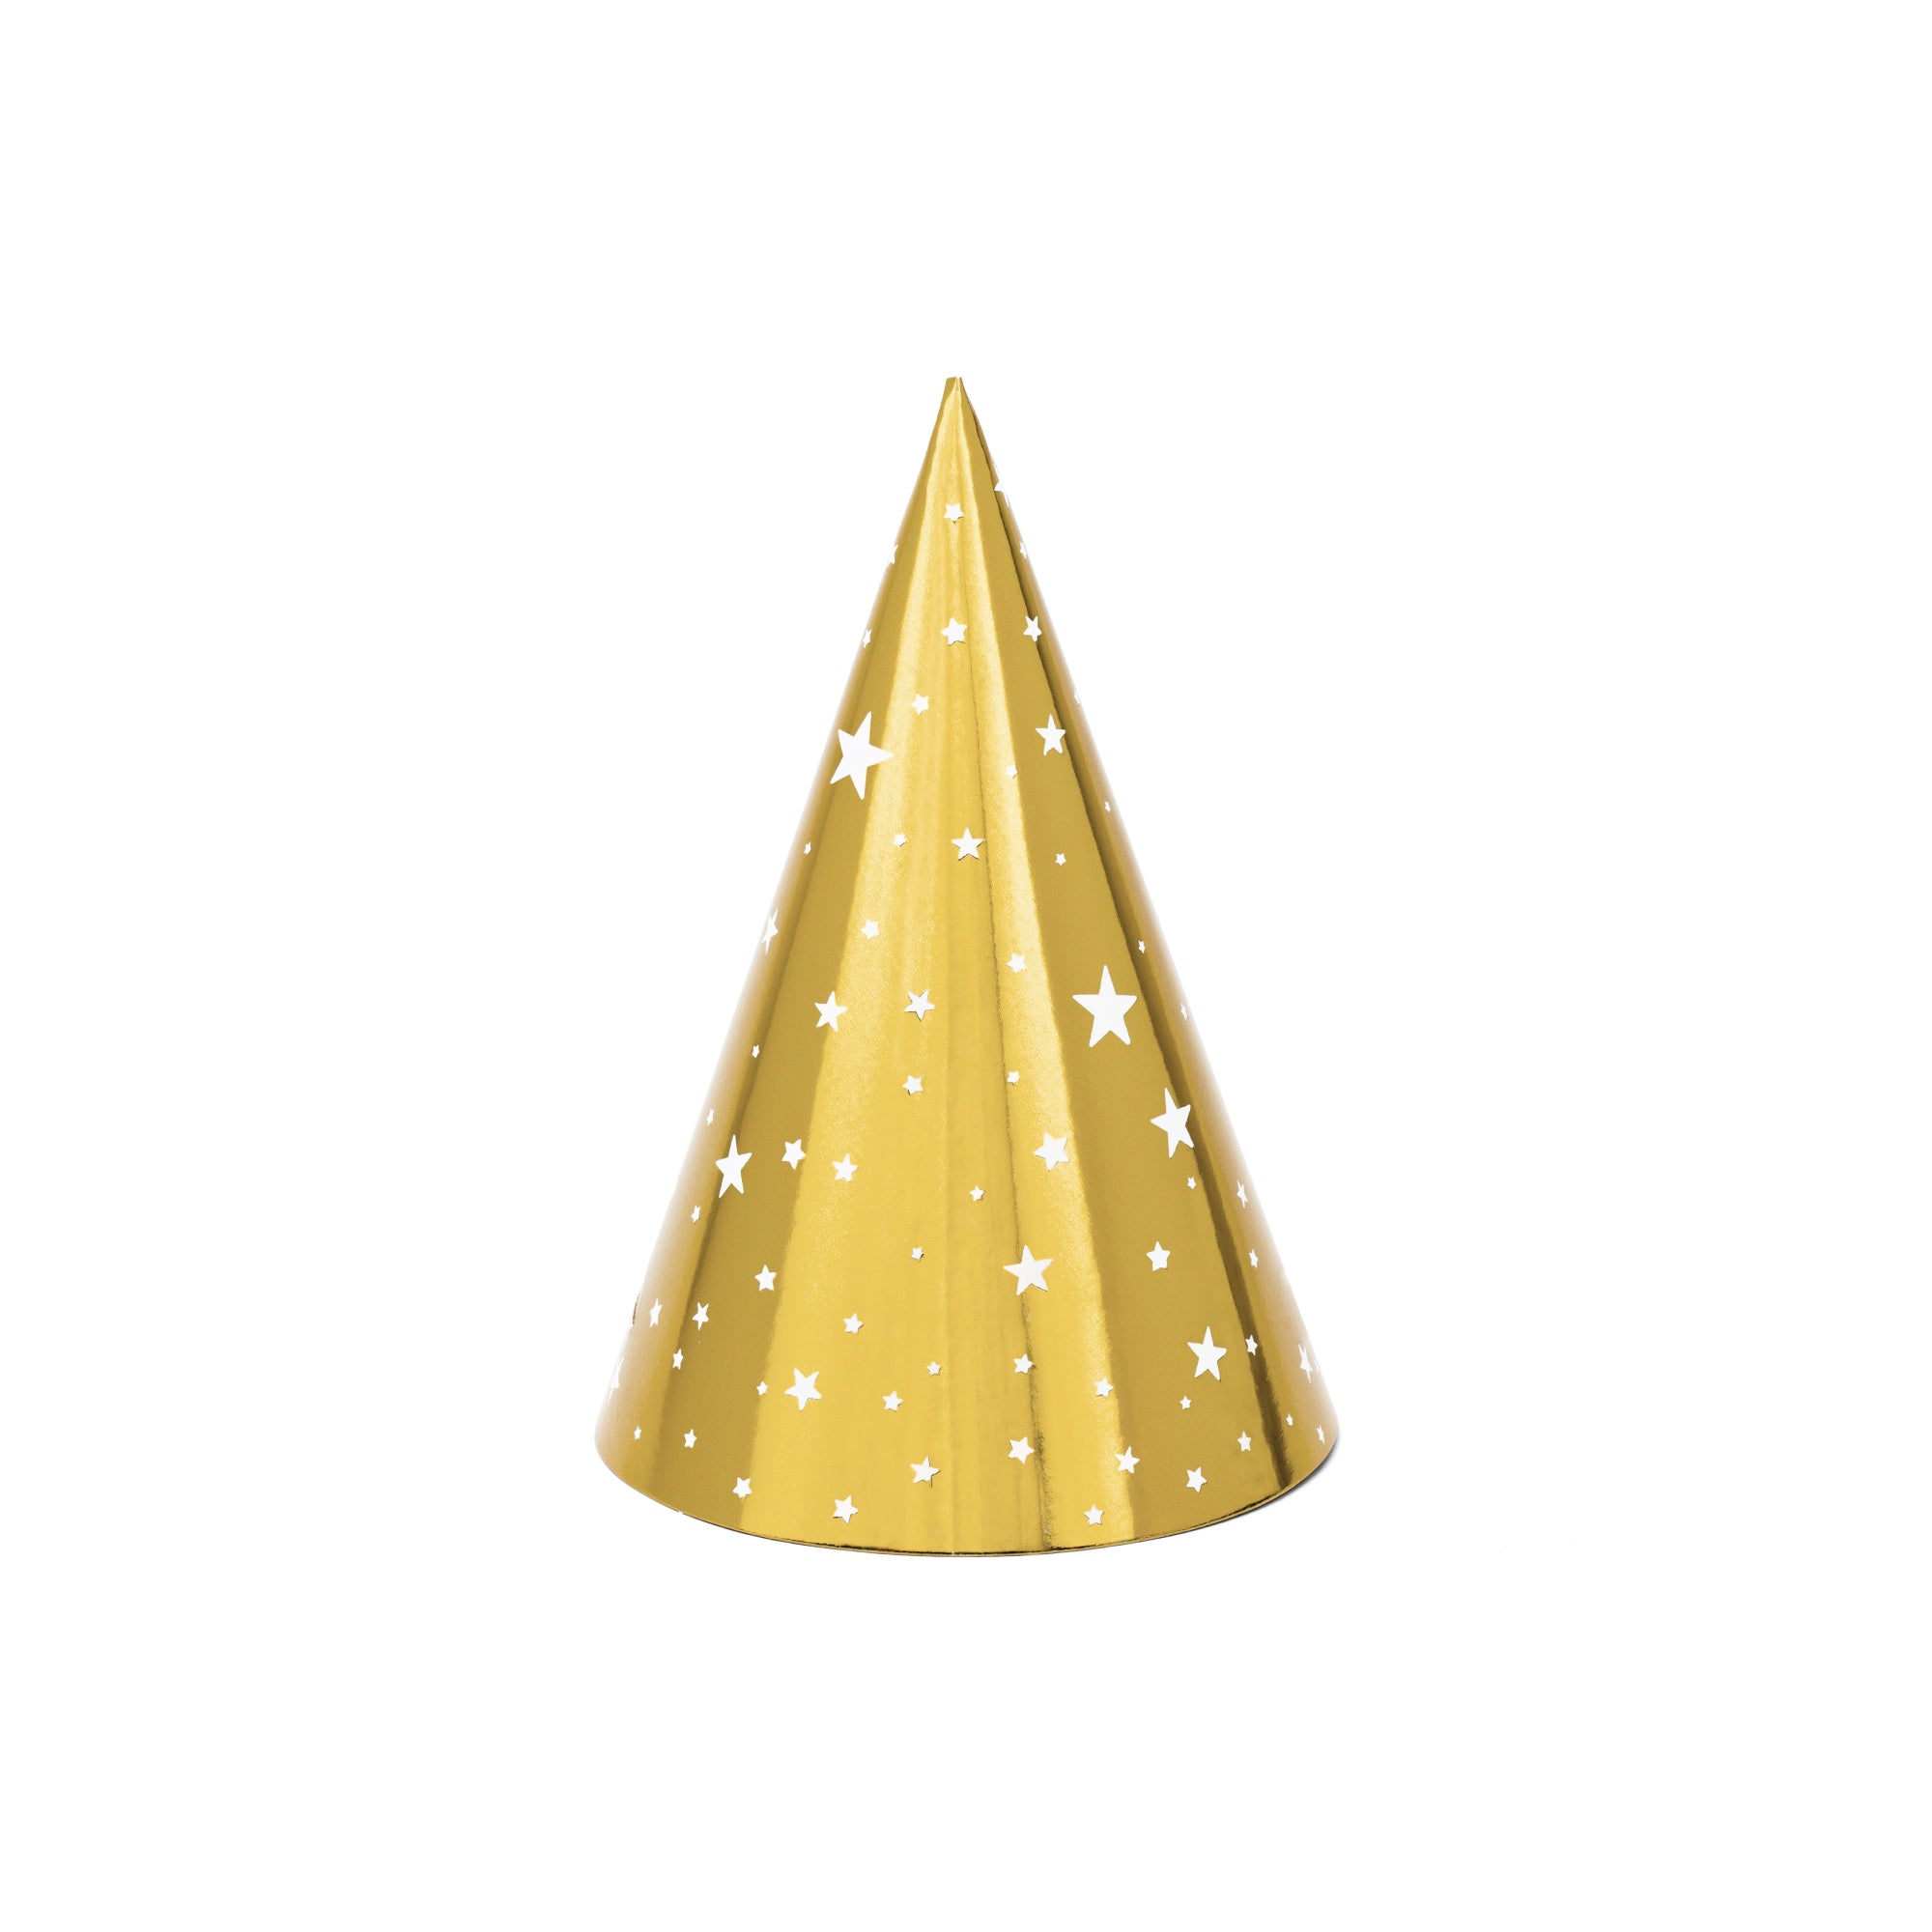 Chỉ với một chiếc mũ lưỡi trai vàng có sao 6 chiếc, bạn đã có thể làm cho bữa tiệc của mình trở nên đặc biệt hơn bao giờ hết. Hãy tham khảo những hình ảnh về mũ lưỡi trai vàng này để có thêm ý tưởng cho bữa tiệc của bạn.